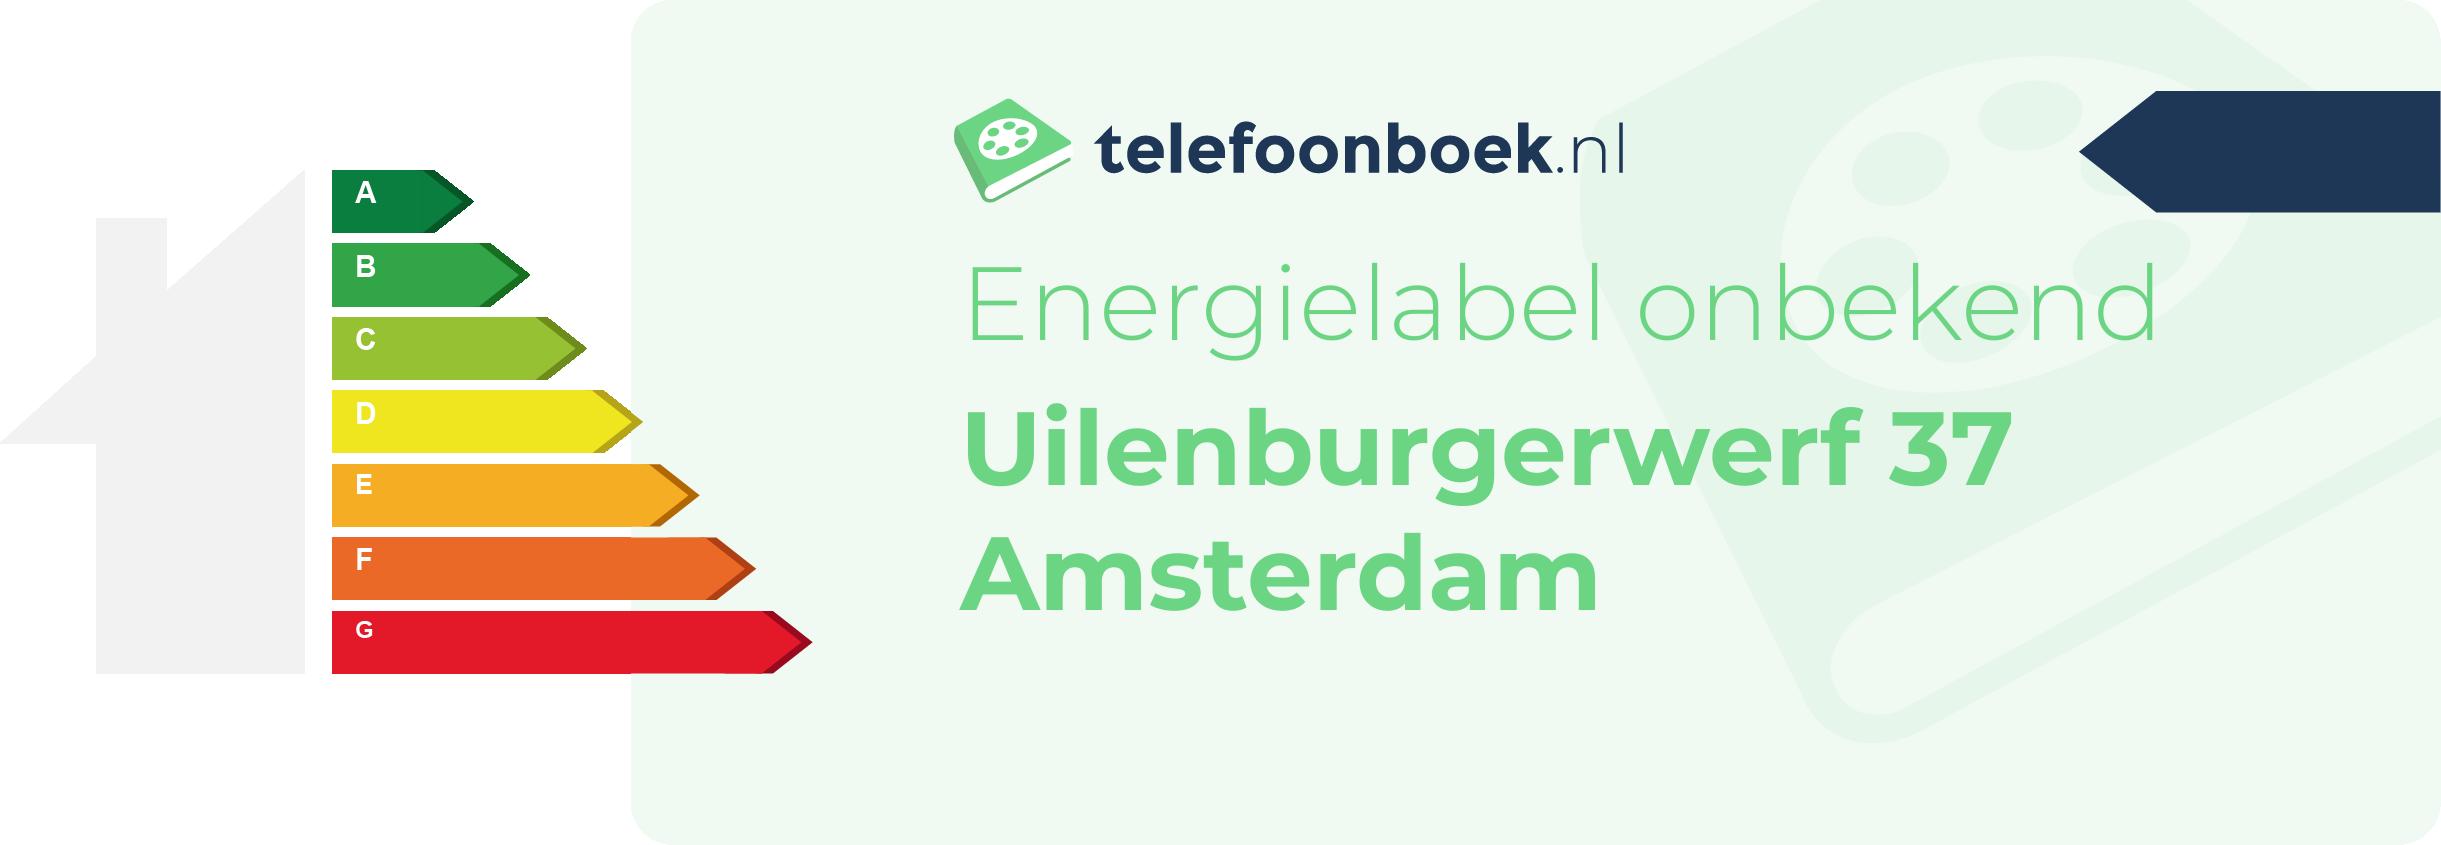 Energielabel Uilenburgerwerf 37 Amsterdam